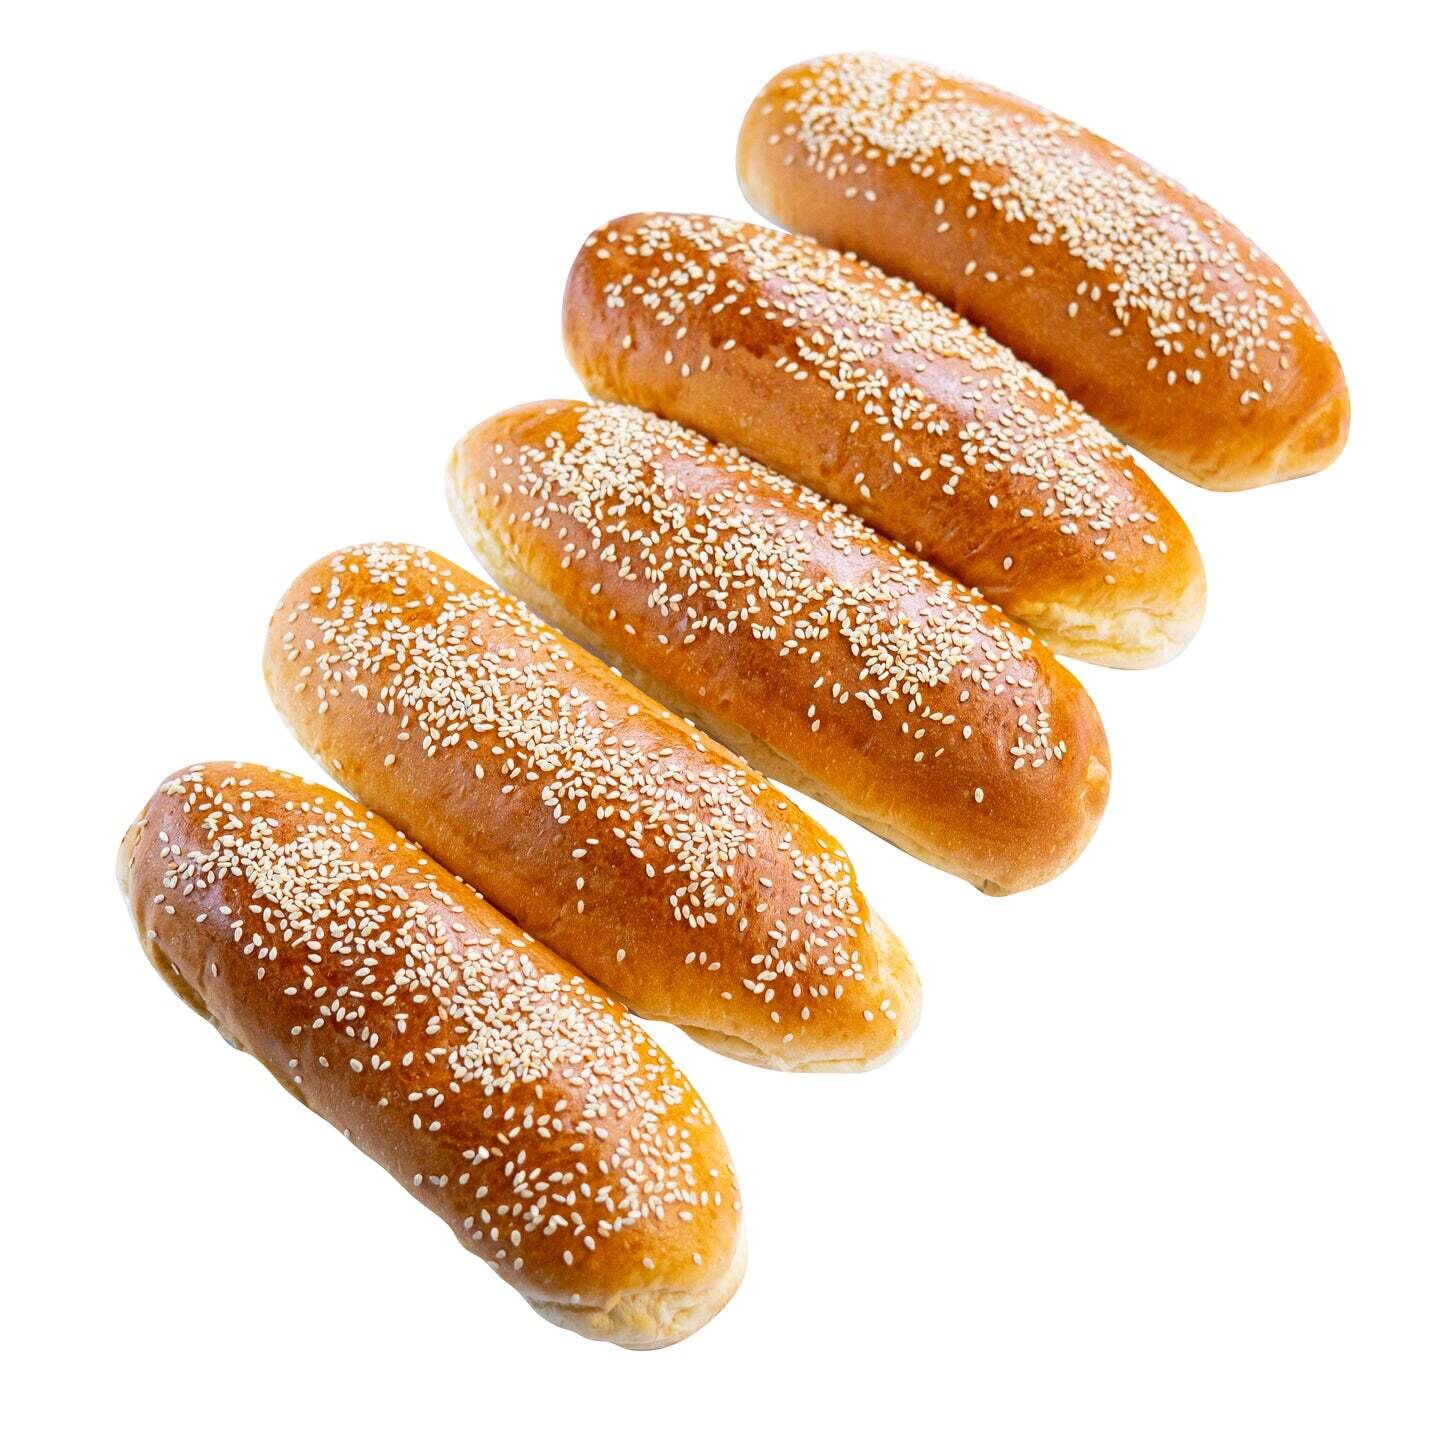 Hot Dog Bread Medium Pack of 5